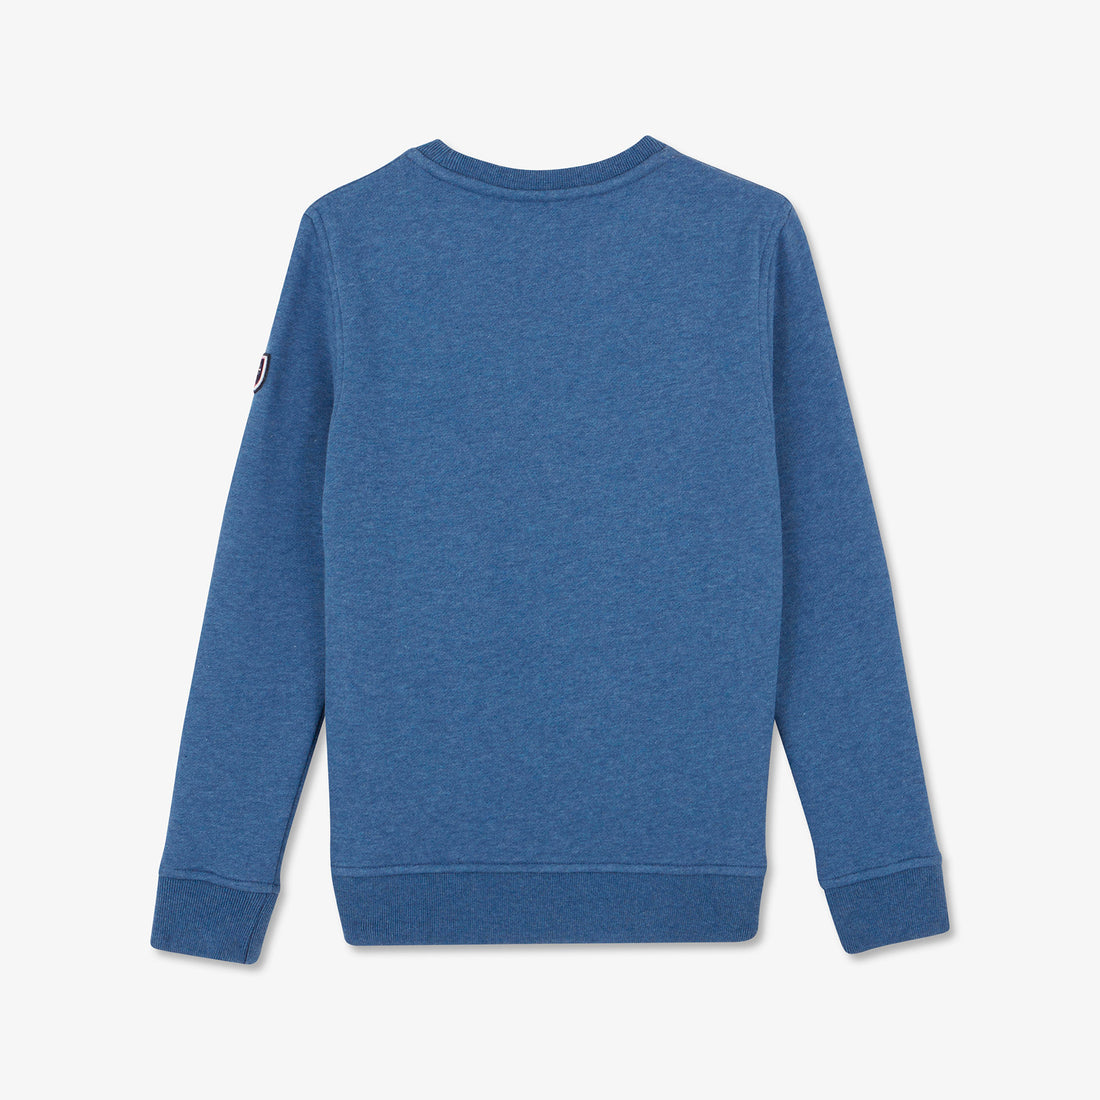 Blue Sweatshirt With Debossed Eden Park Inscription_H23MAISW0053_BLM30_02